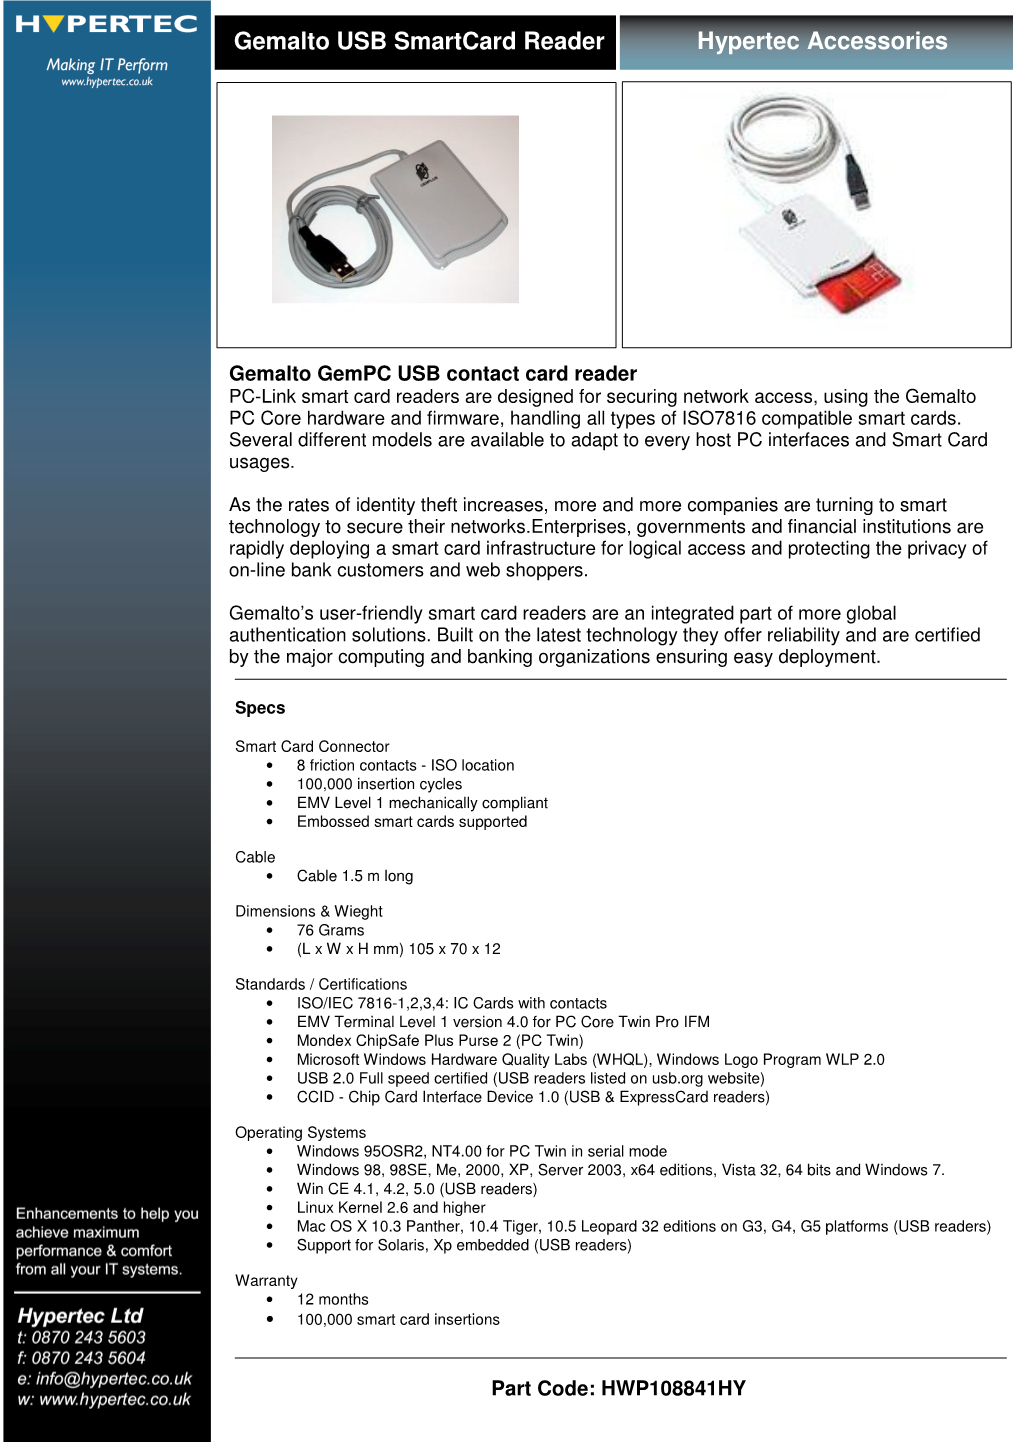 Hypertec Accessories Gemalto USB Smartcard Reader